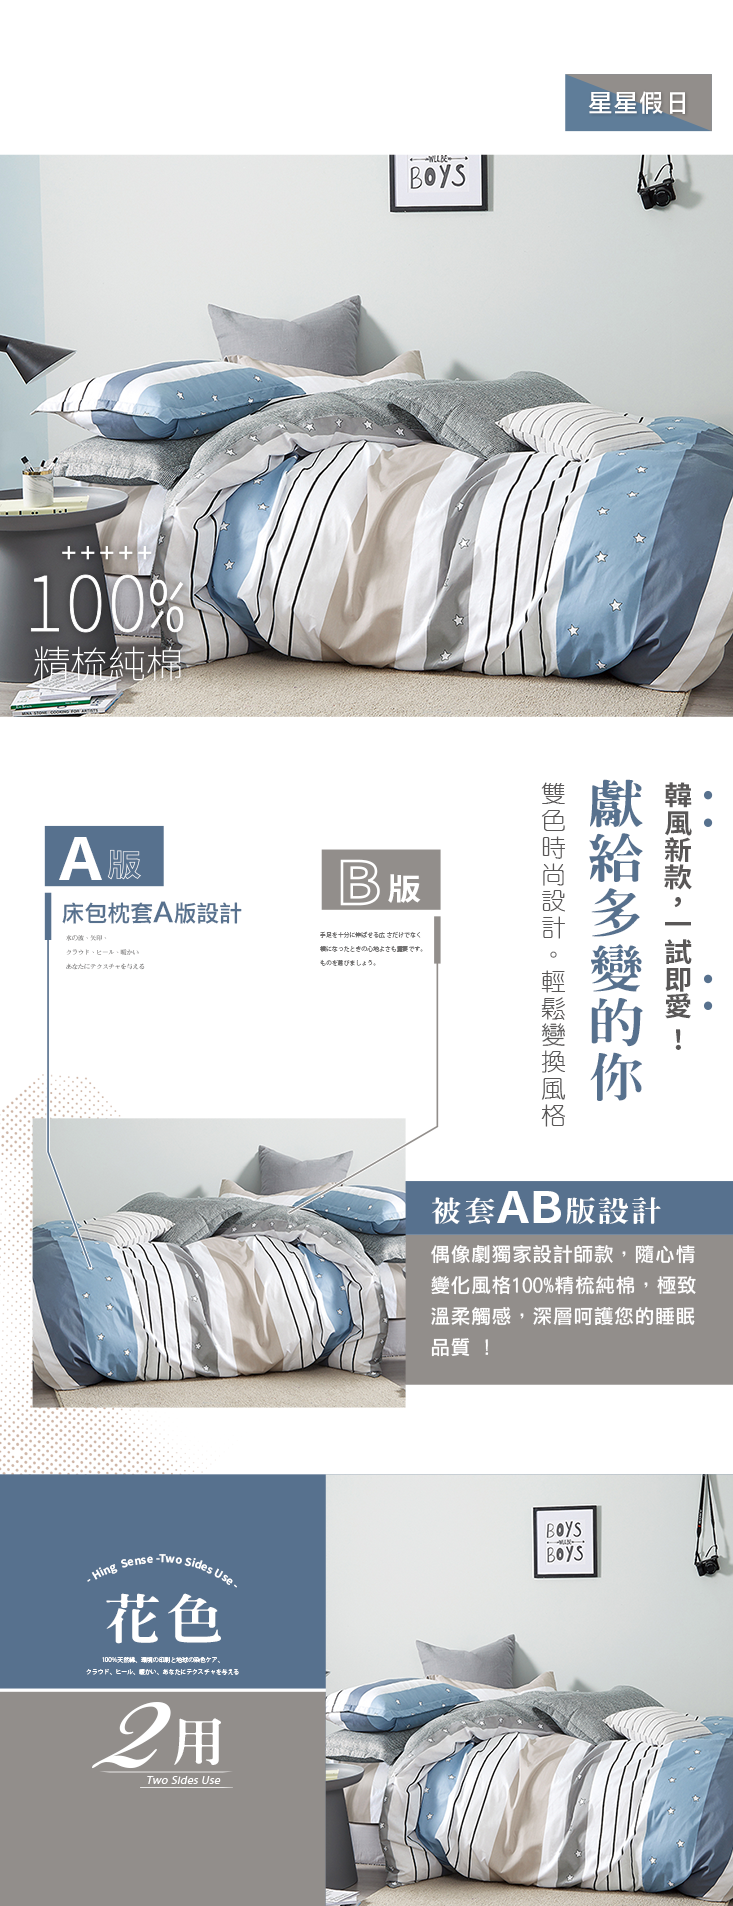 【Ania Casa】精梳純棉床包被套組 /單人床包/雙人床包/加大床包